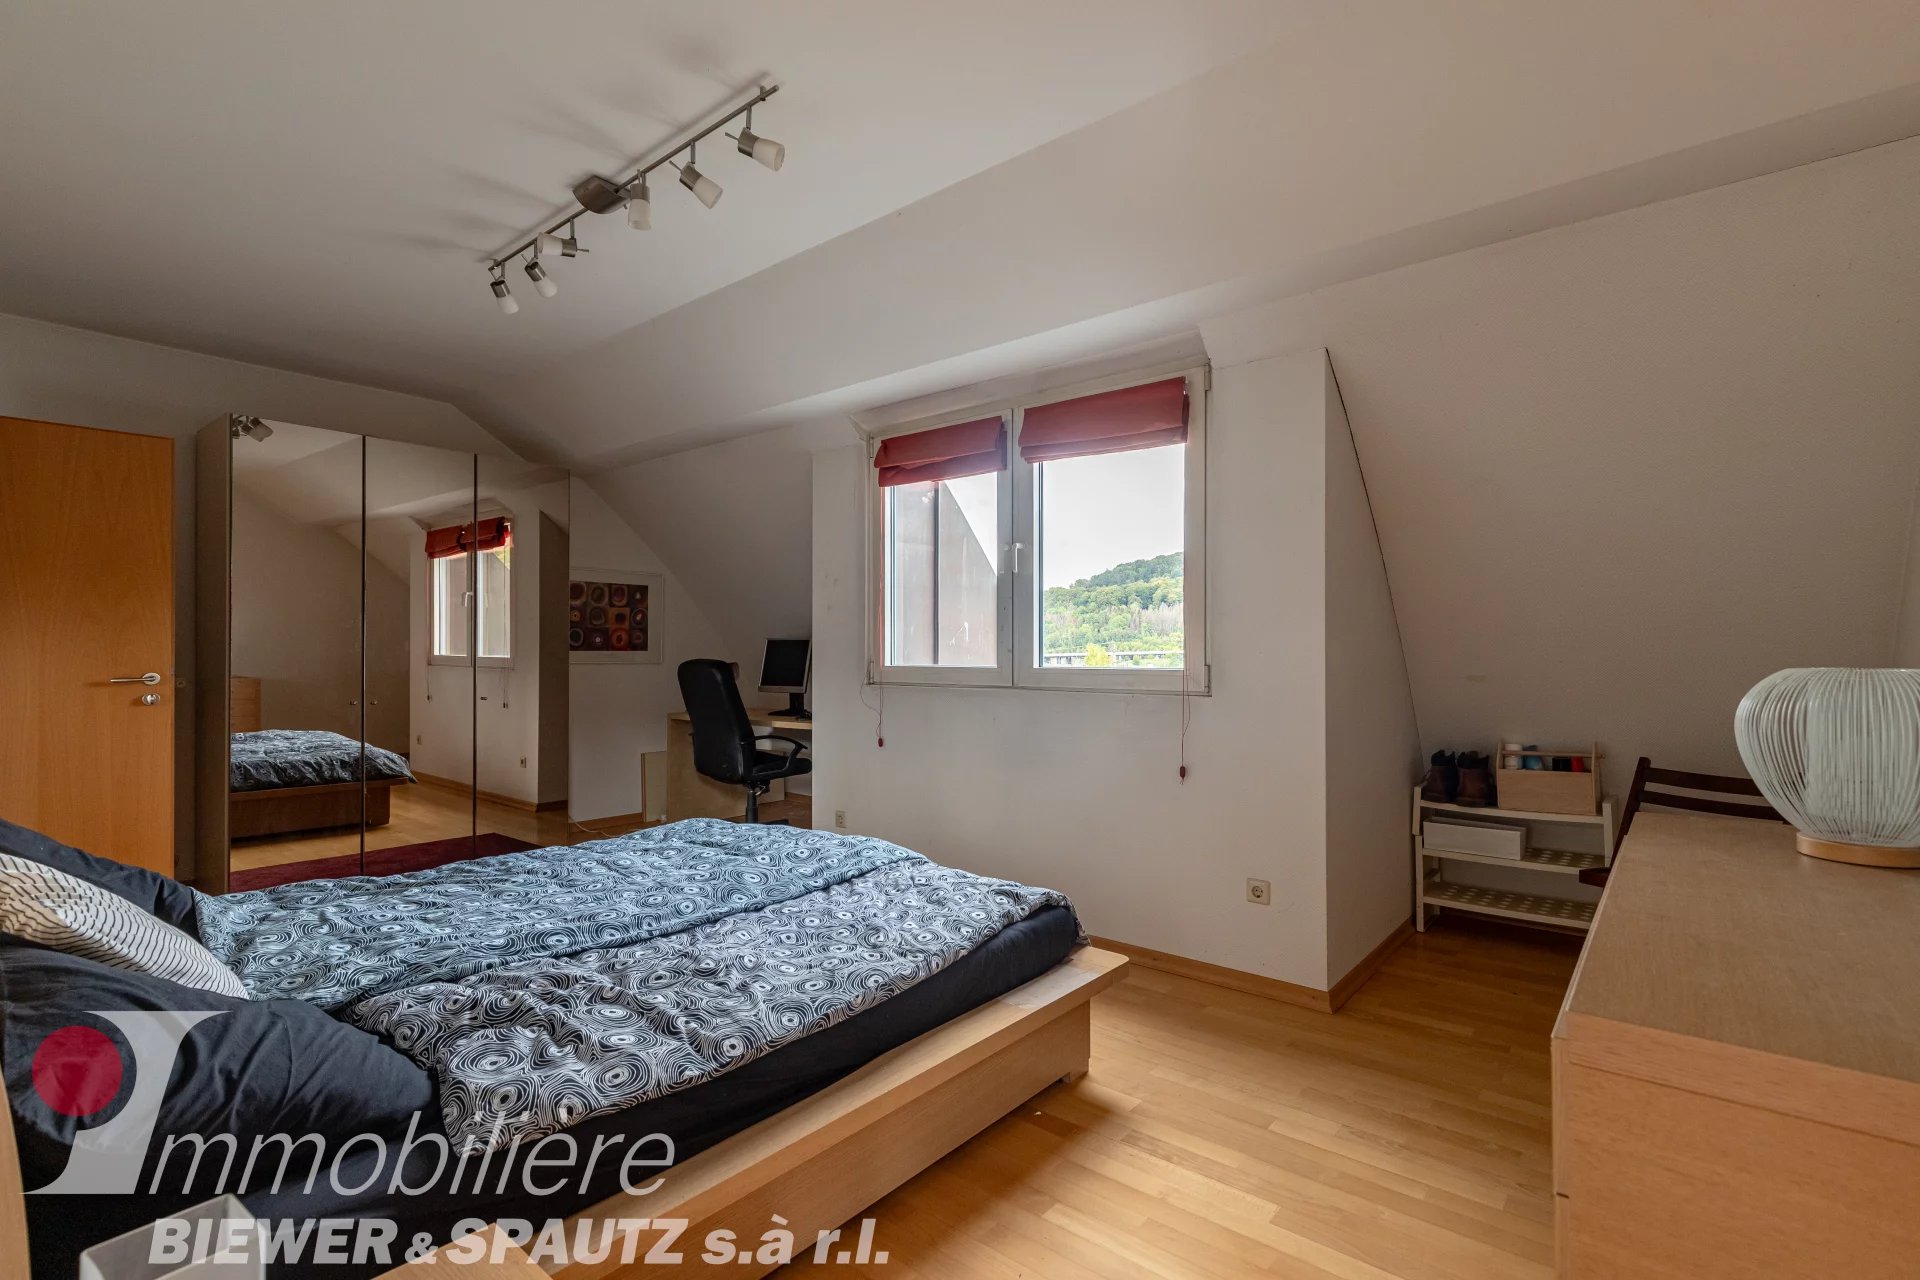 FOR SALE - 2 bedroom Duplex in Lorentzweiler